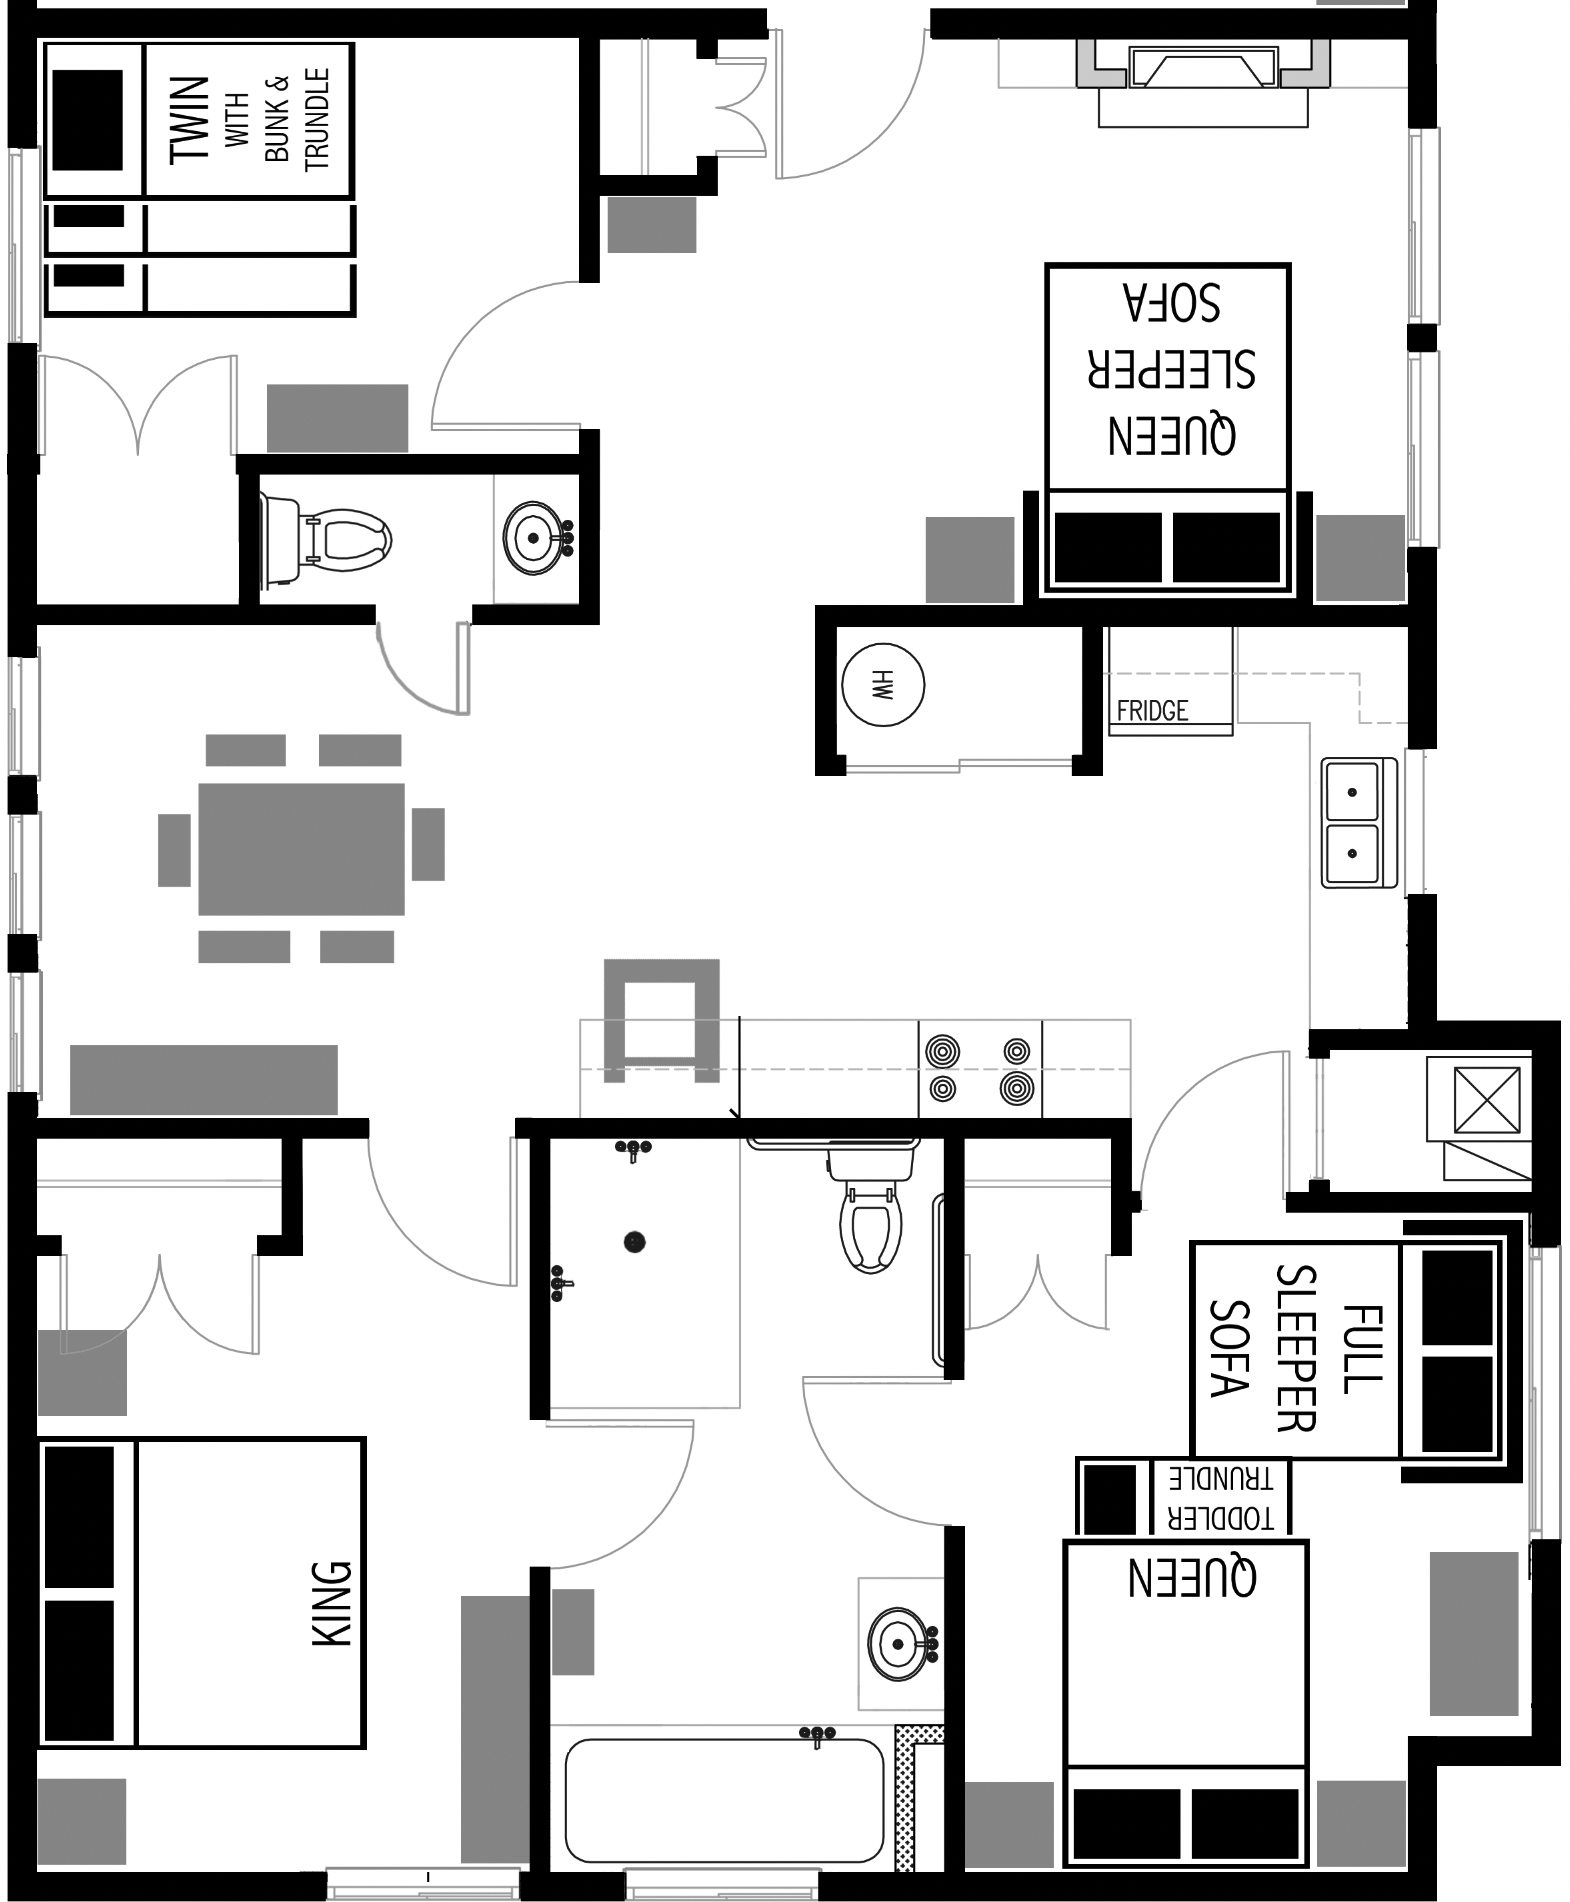 3-bedroom Vacation Rental Floor Plan